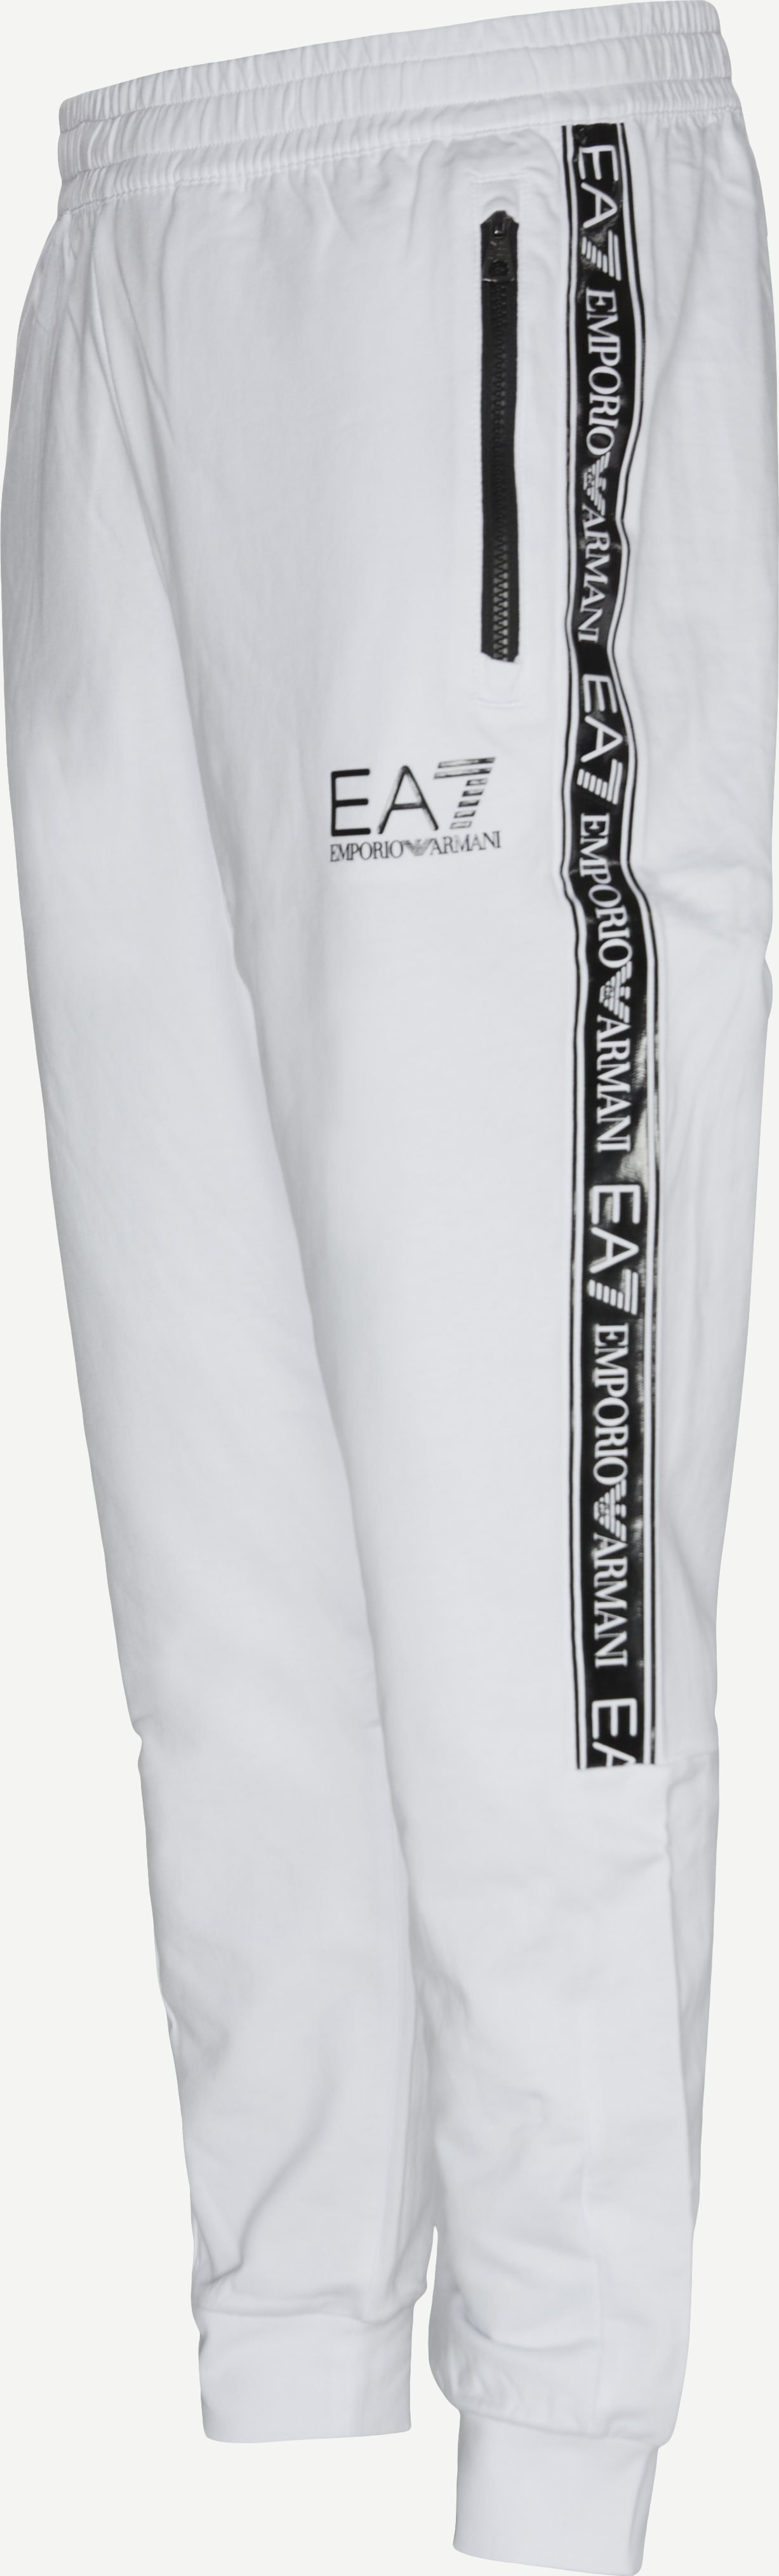 PJ05Z Sweatpant - Bukser - Regular fit - Hvid